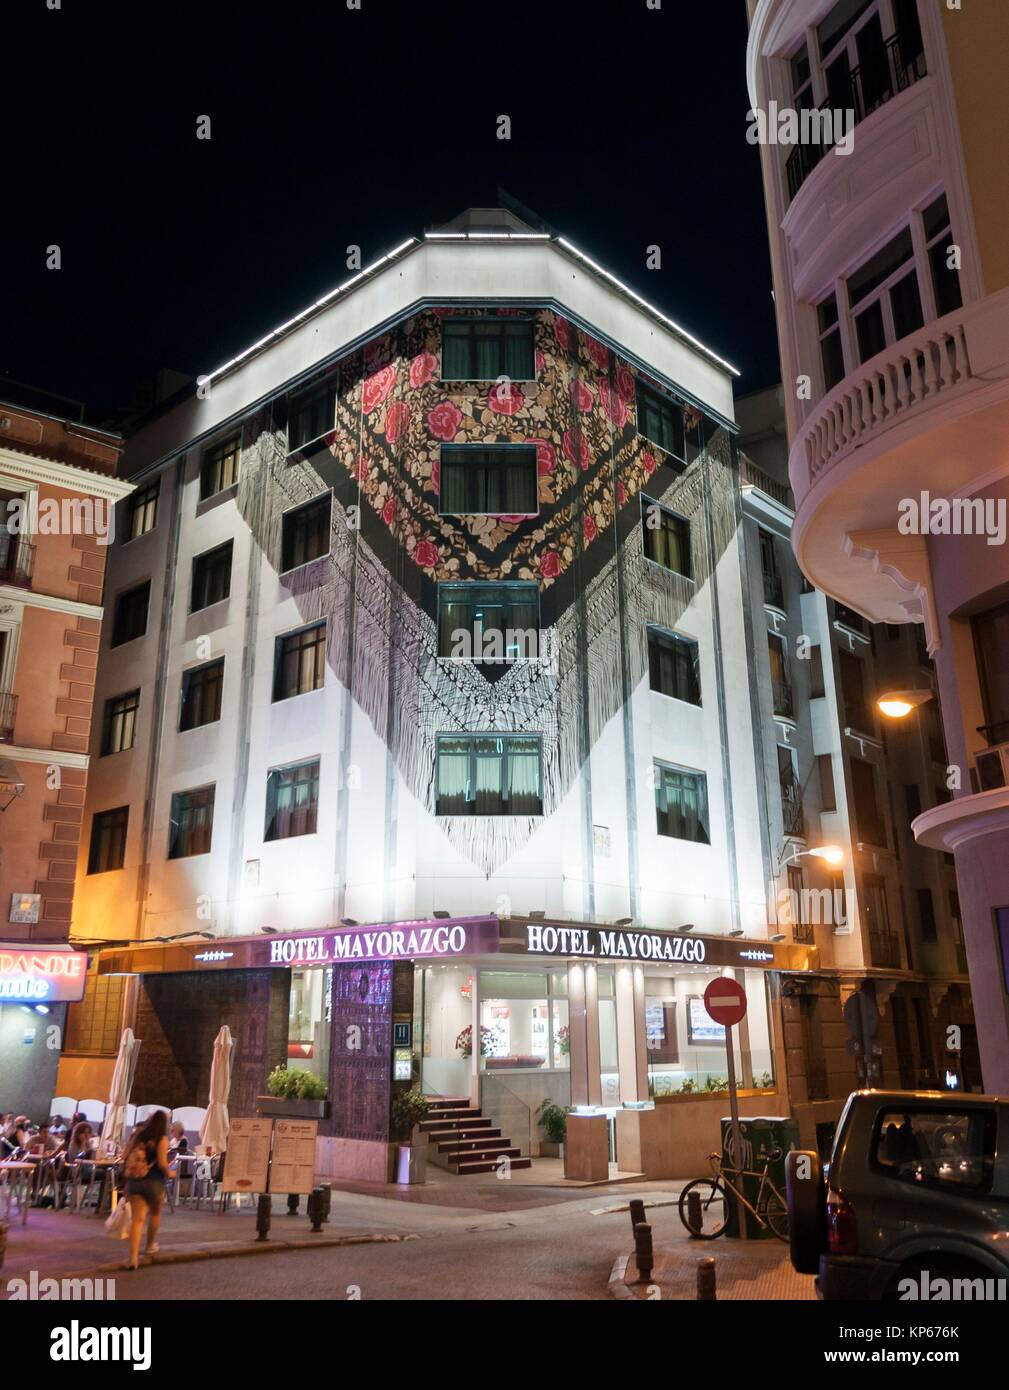 Mantón de Manila (Manila shawl) in hotel facade near Gran Vía. Madrid. Spain. Stock Photo